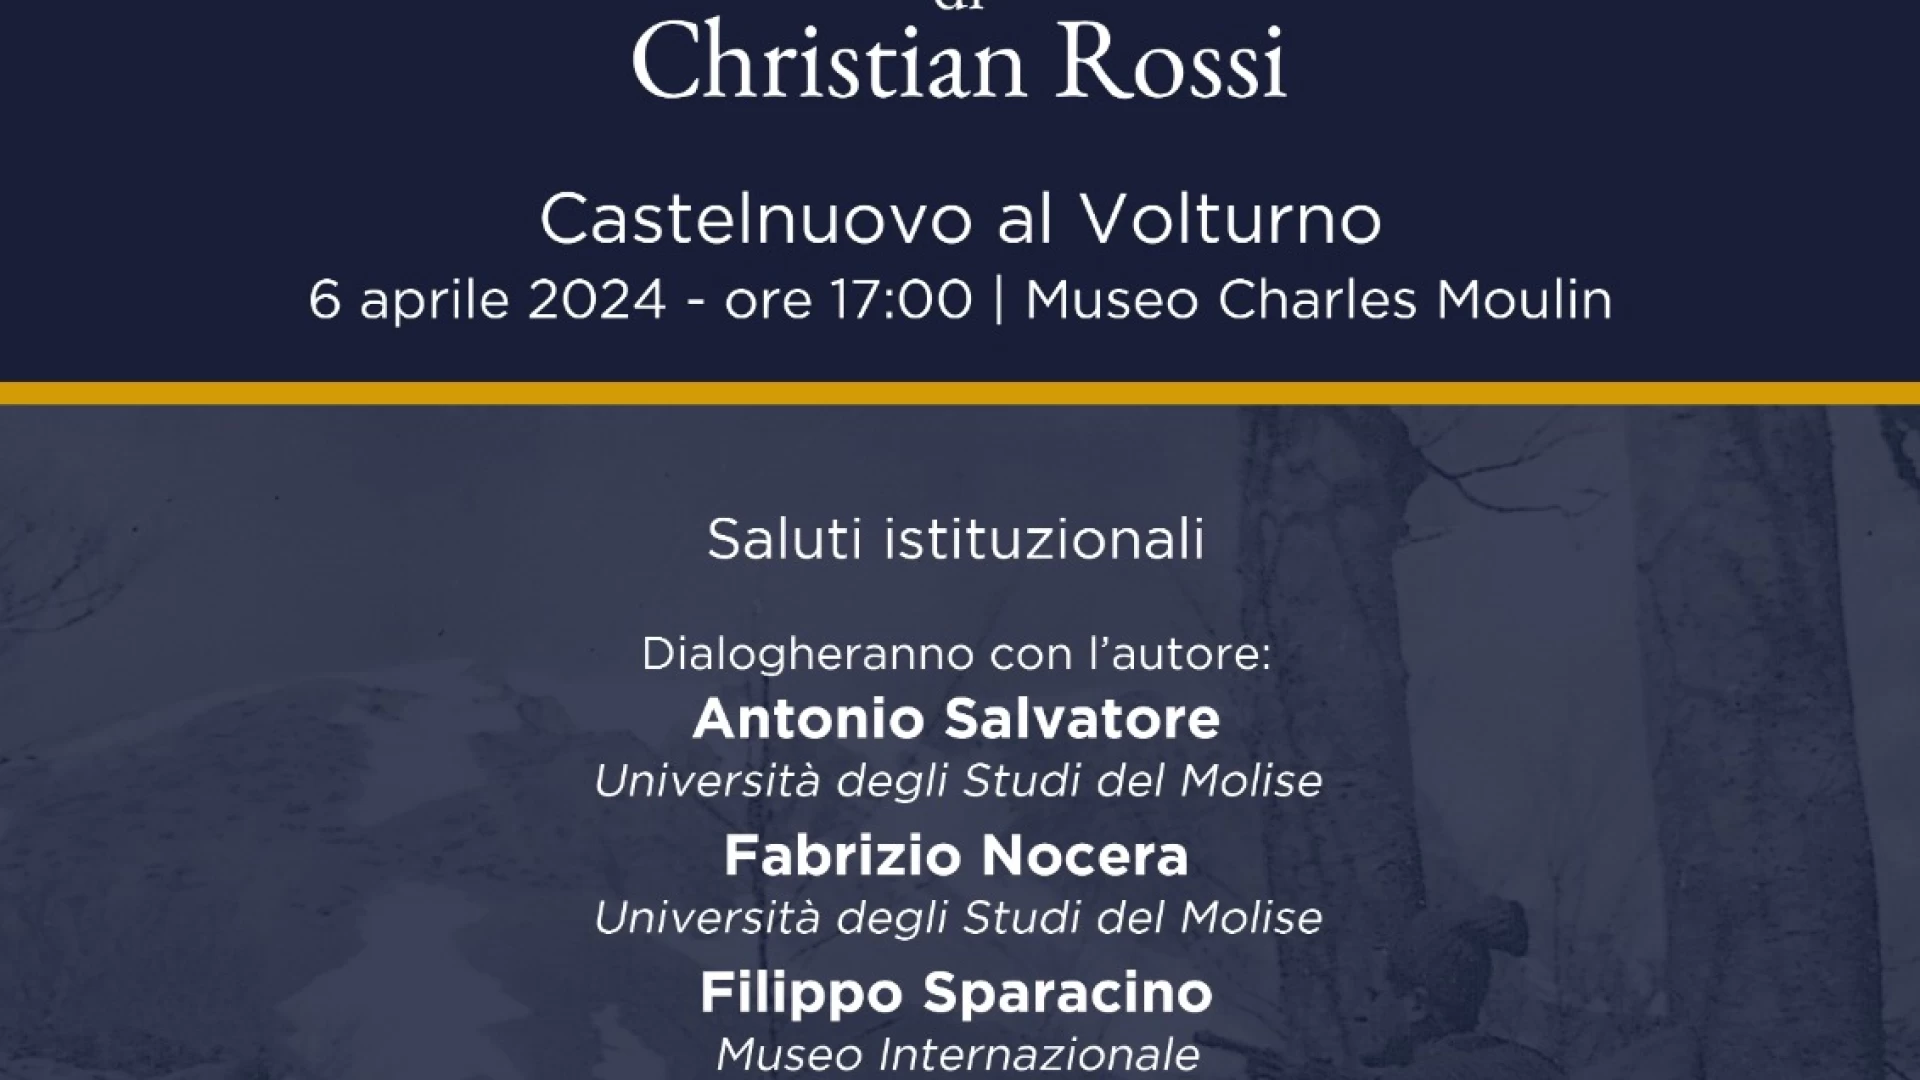 “La Guerra nel mio paese”, sabato 6 aprile a Castelnuovo al Volturno la presentazione del libro di Christian Rossi.